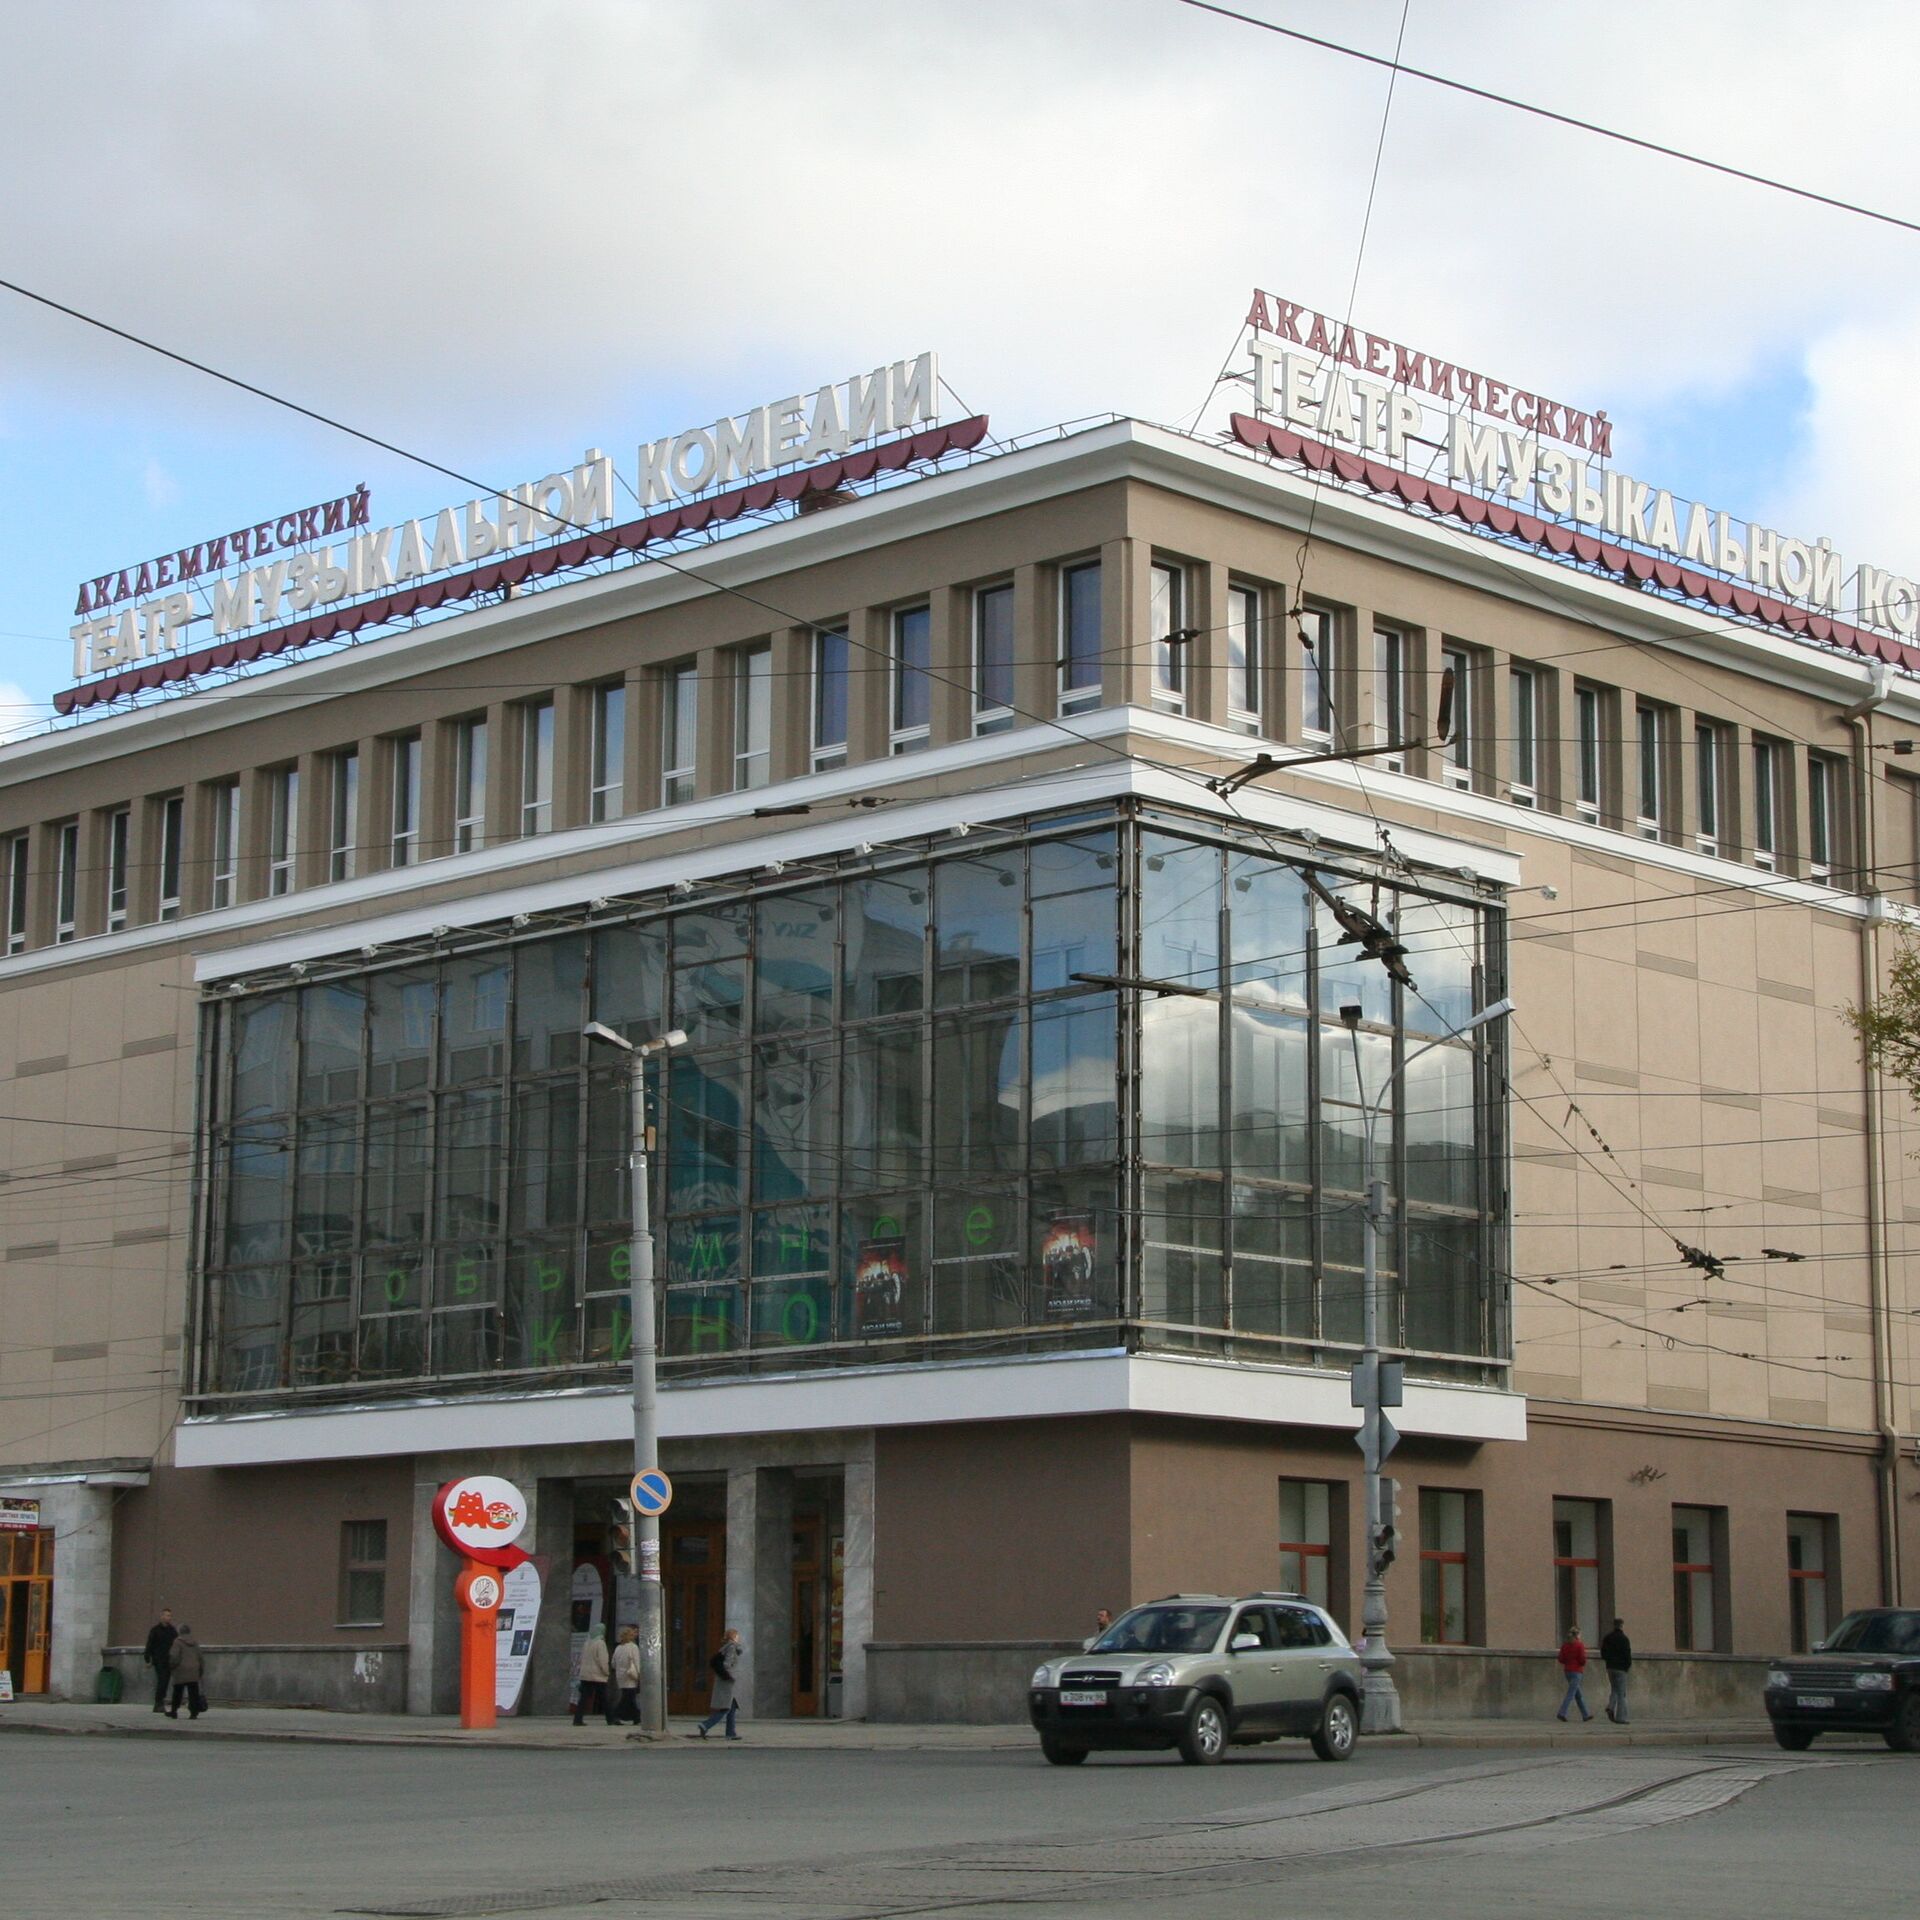 Свердловский театр музыкальной комедии здание